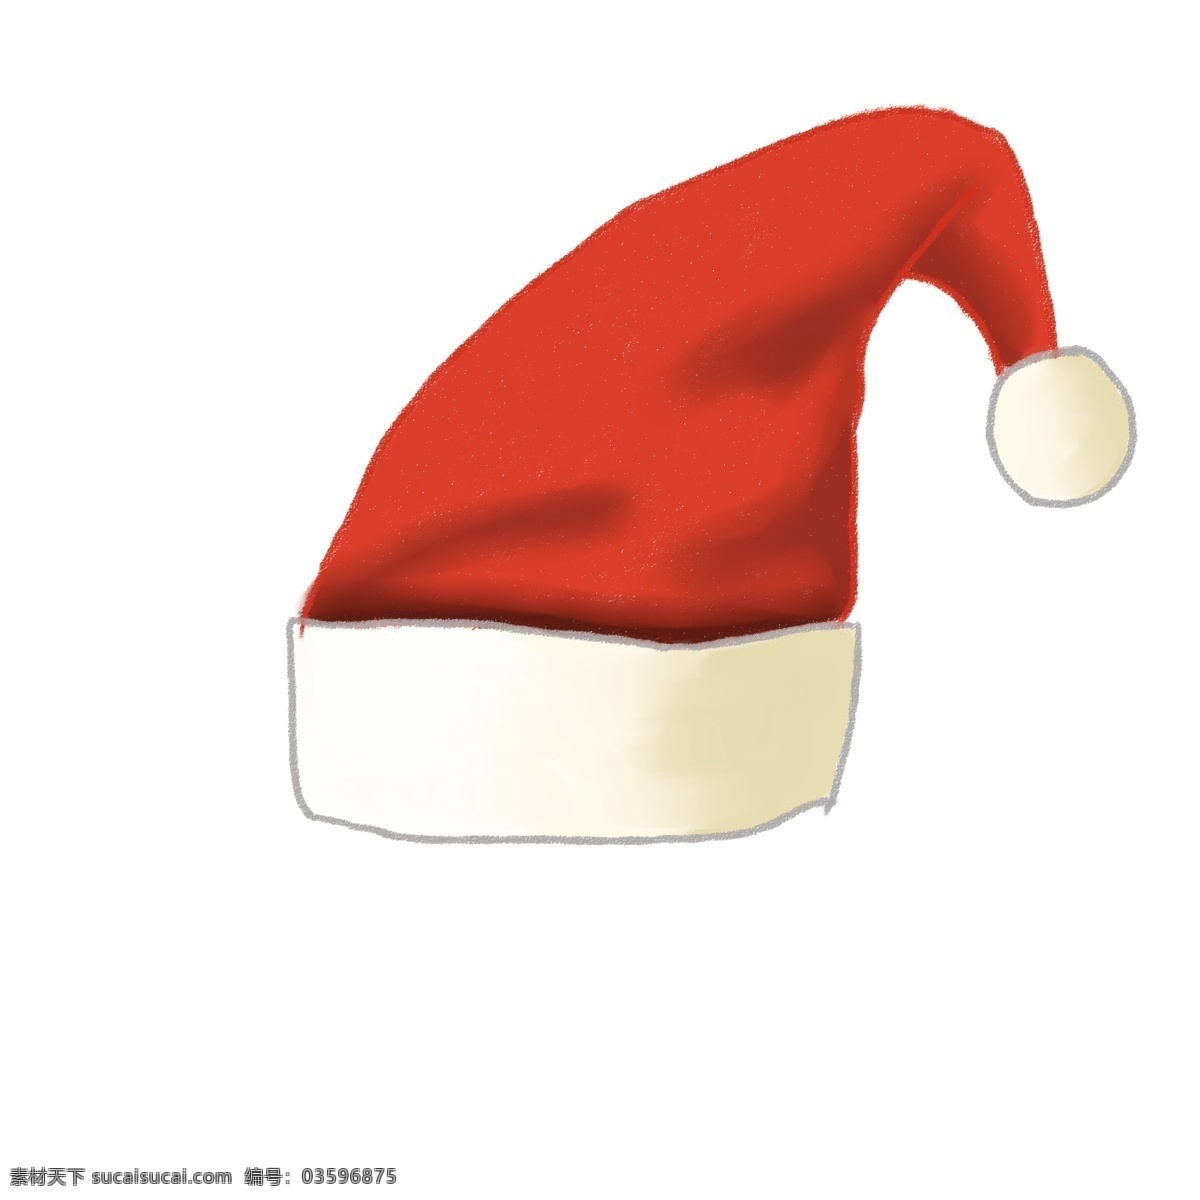 原创 小 清新 简约 可爱 梦幻 圣诞 系列 元素 小清新 红色 圣诞帽